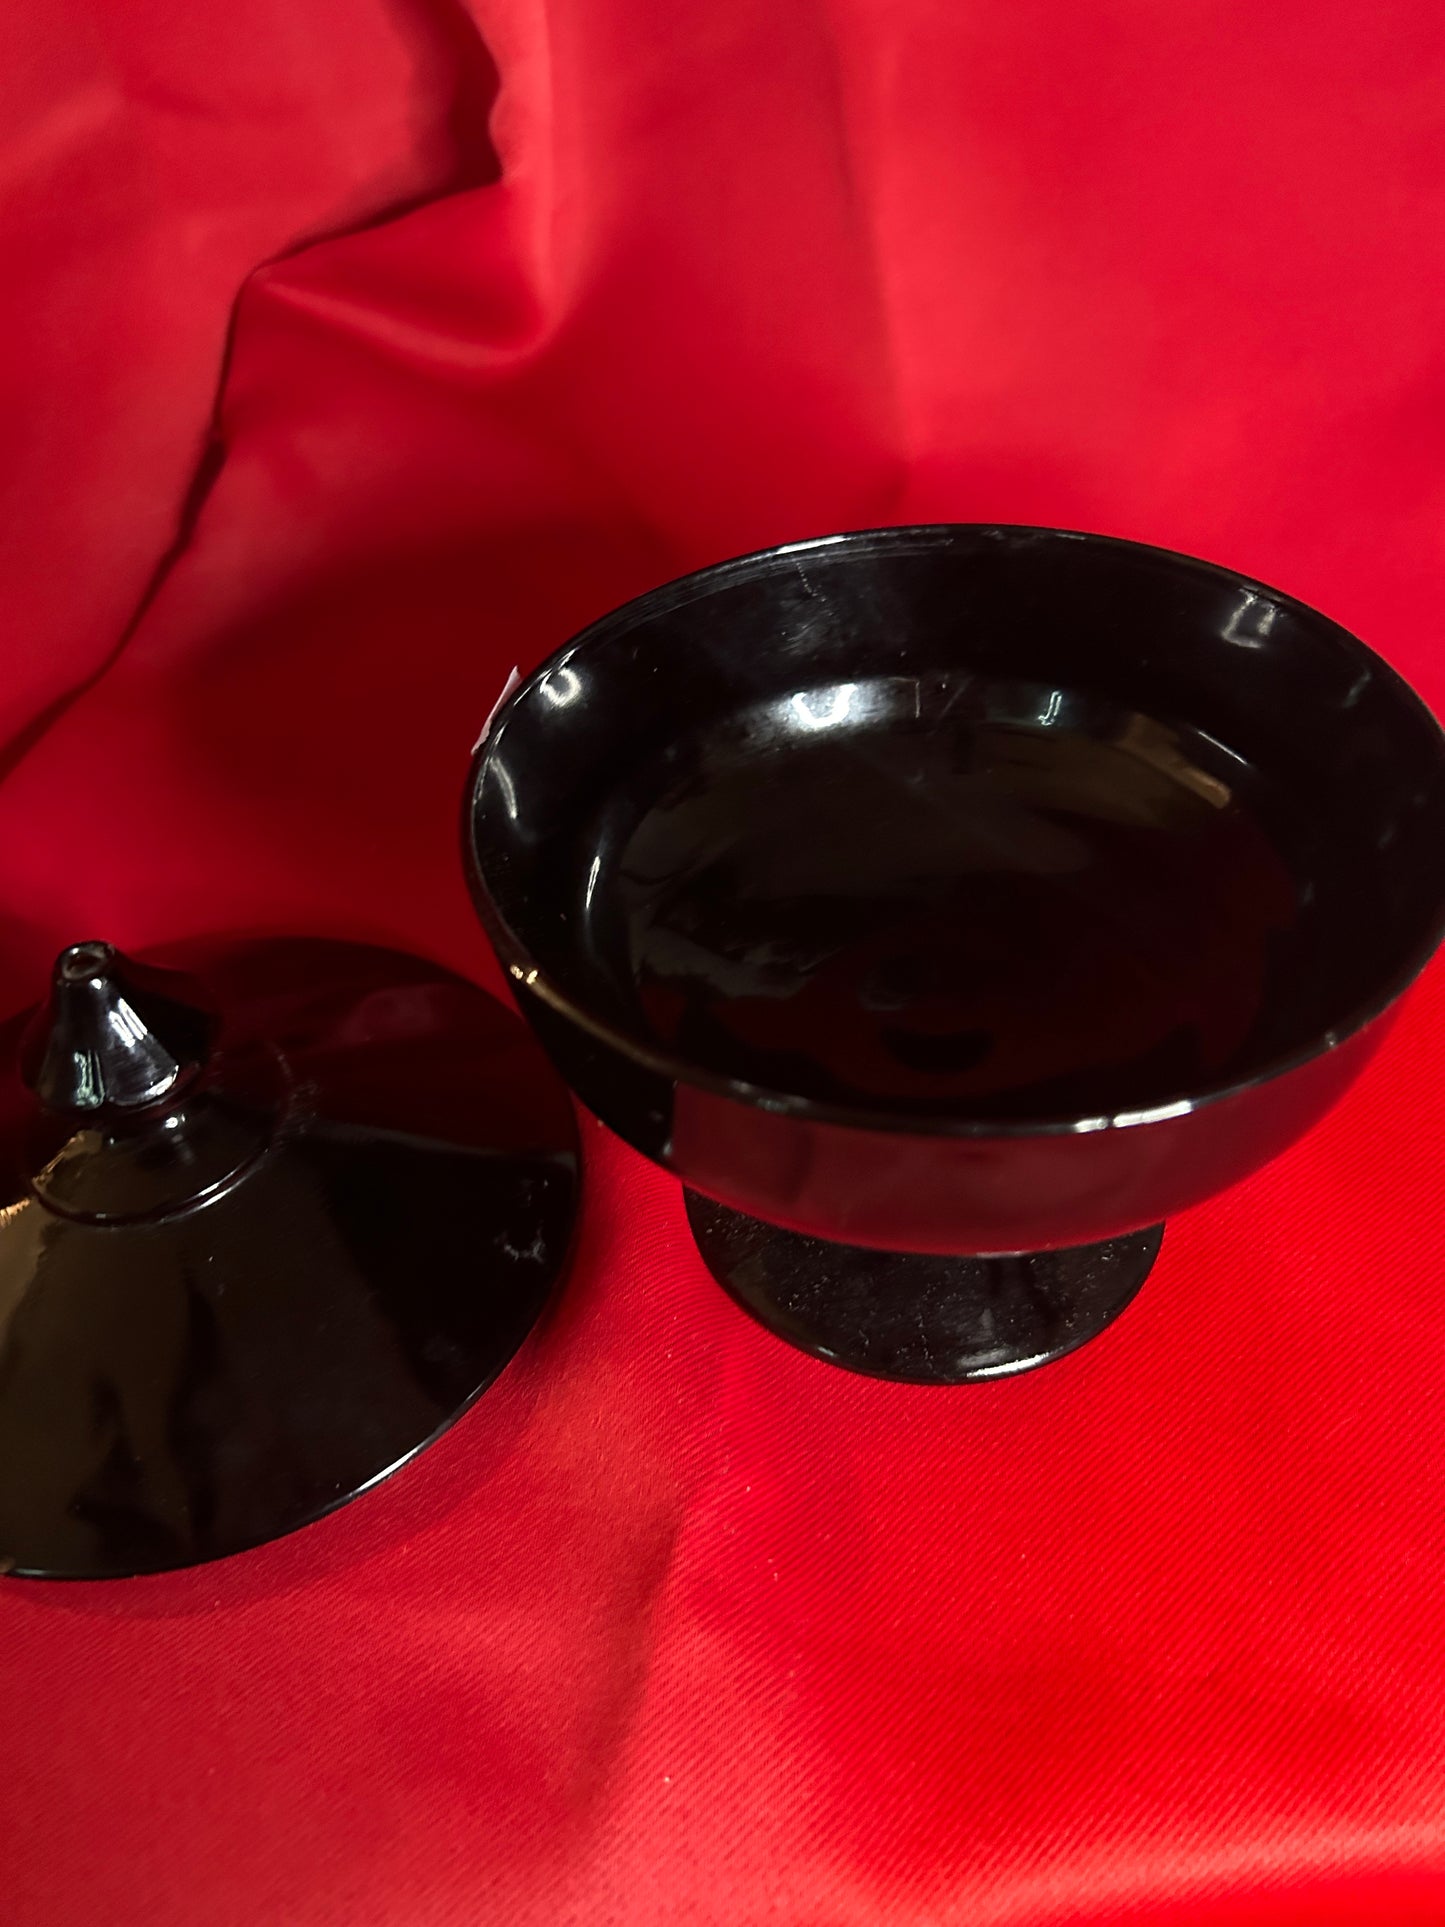 Vintage Black Depression Glass Lidded Pedestal Candy Dish